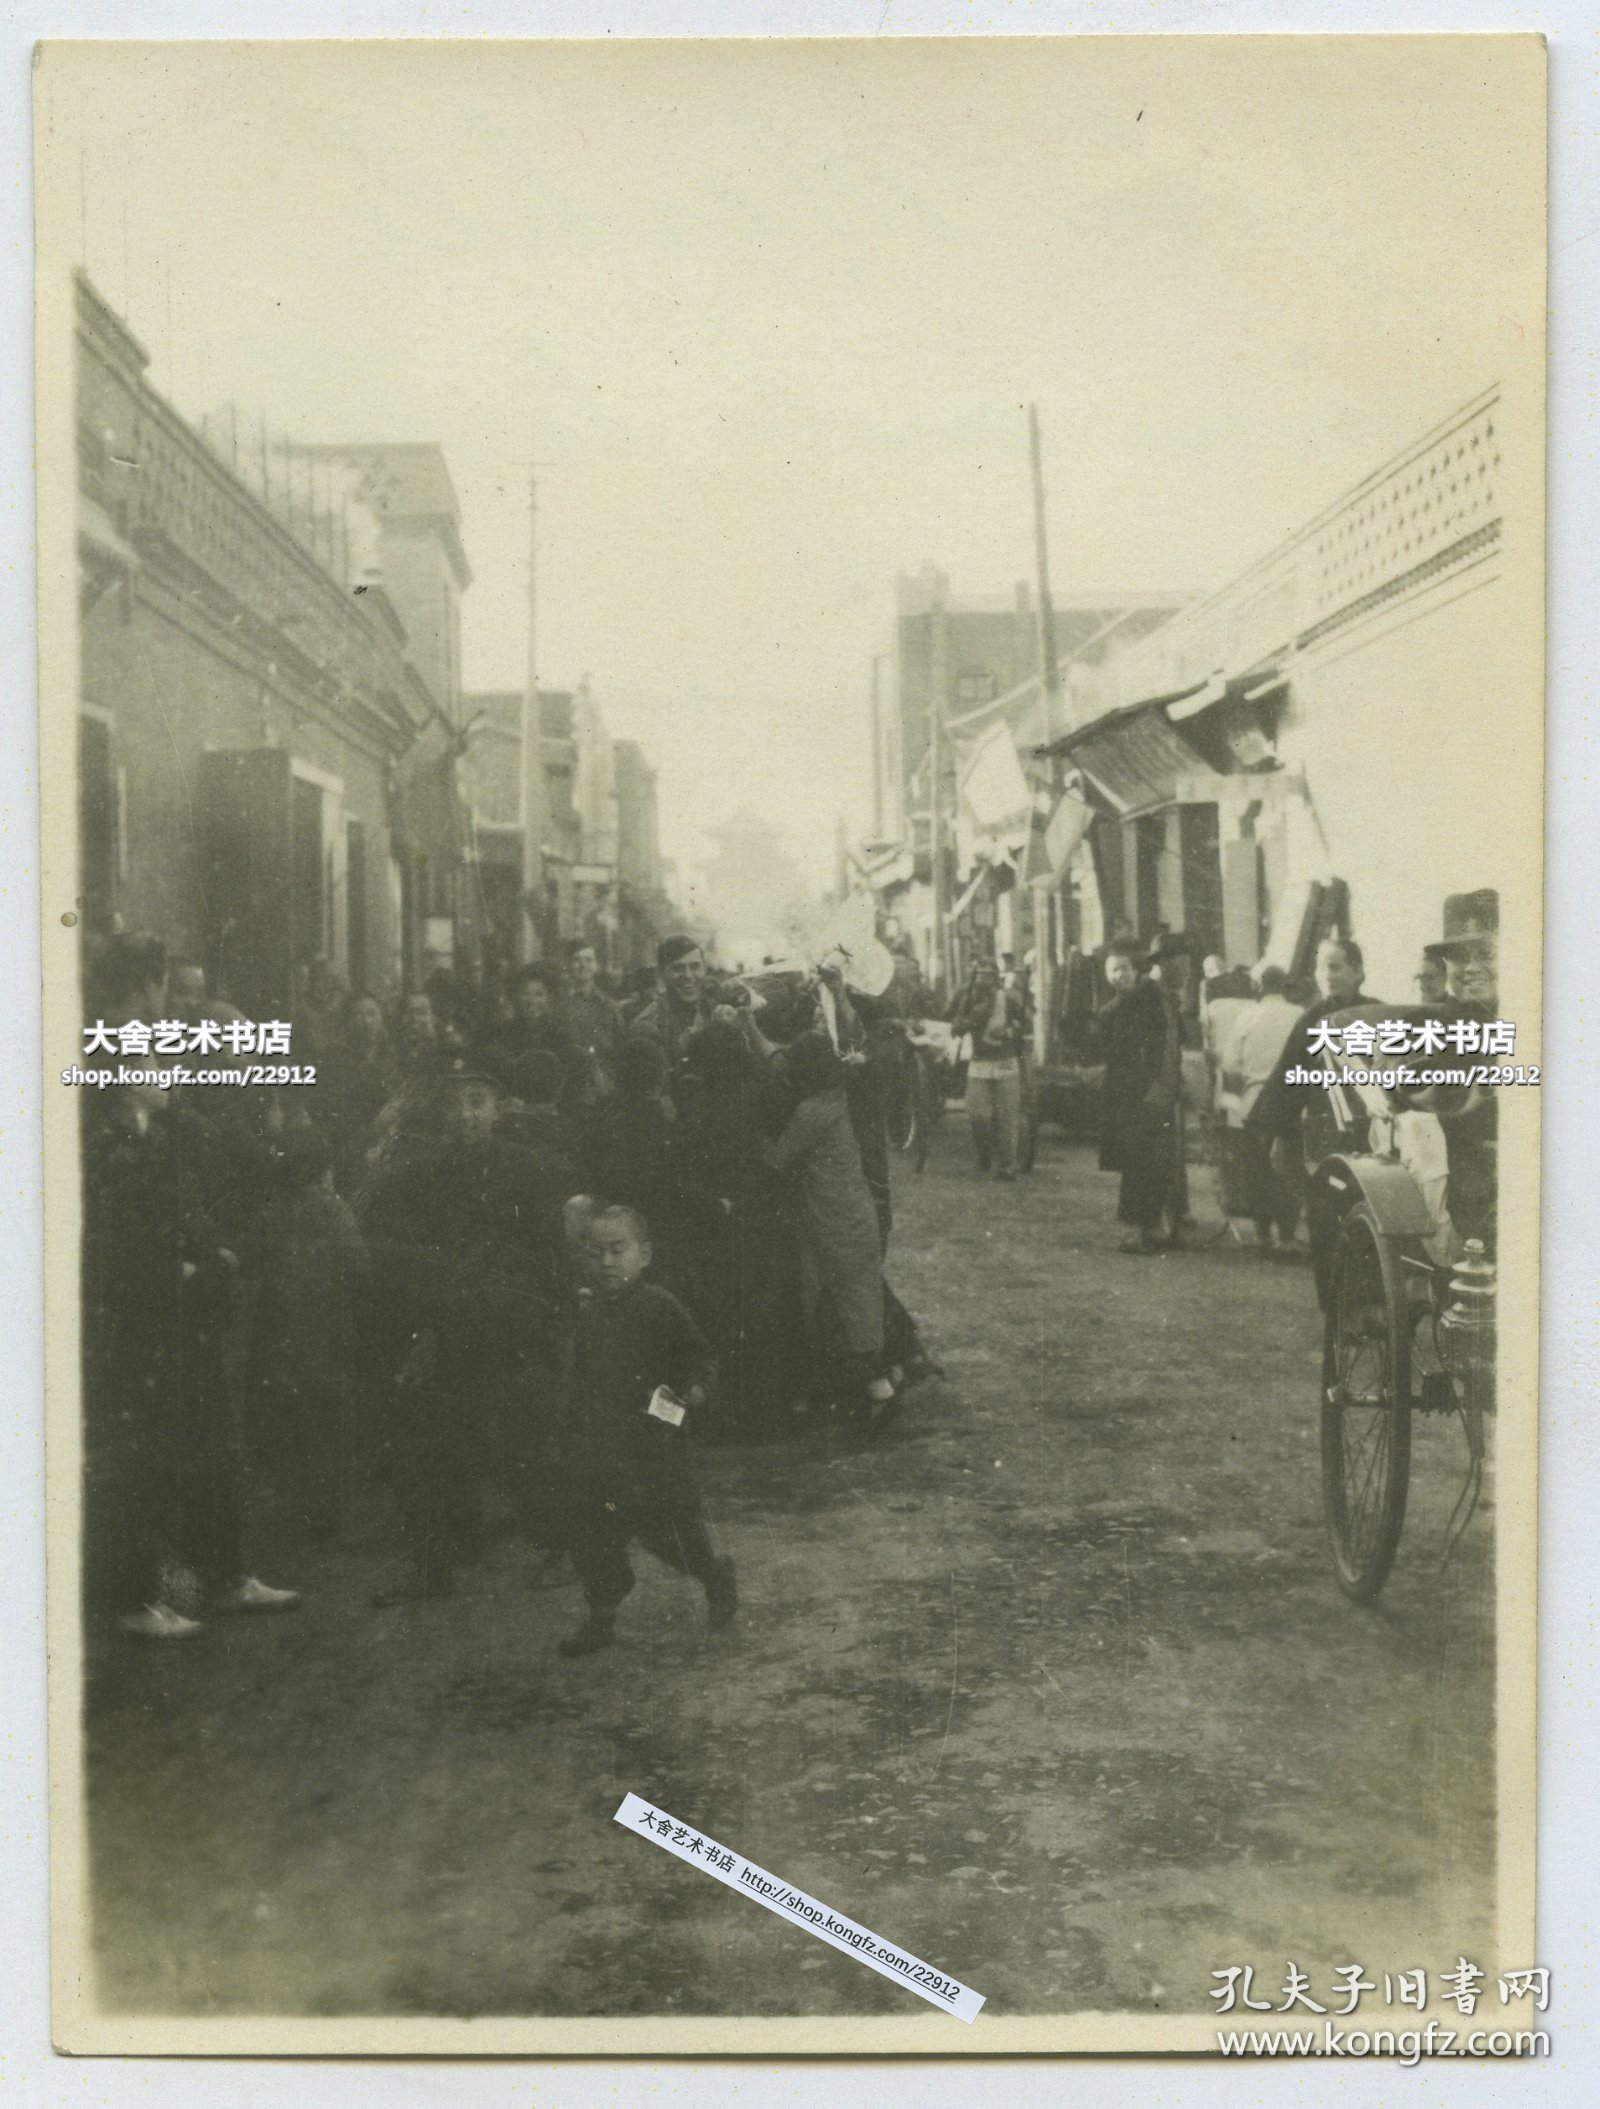 1945年二战日本投降美军接管天津后，一名美军军官在鼓楼一侧的街道上，被天津儿童围拢在其中，美军和当地百姓关系其乐融融。9.9X7.4厘米, 泛银